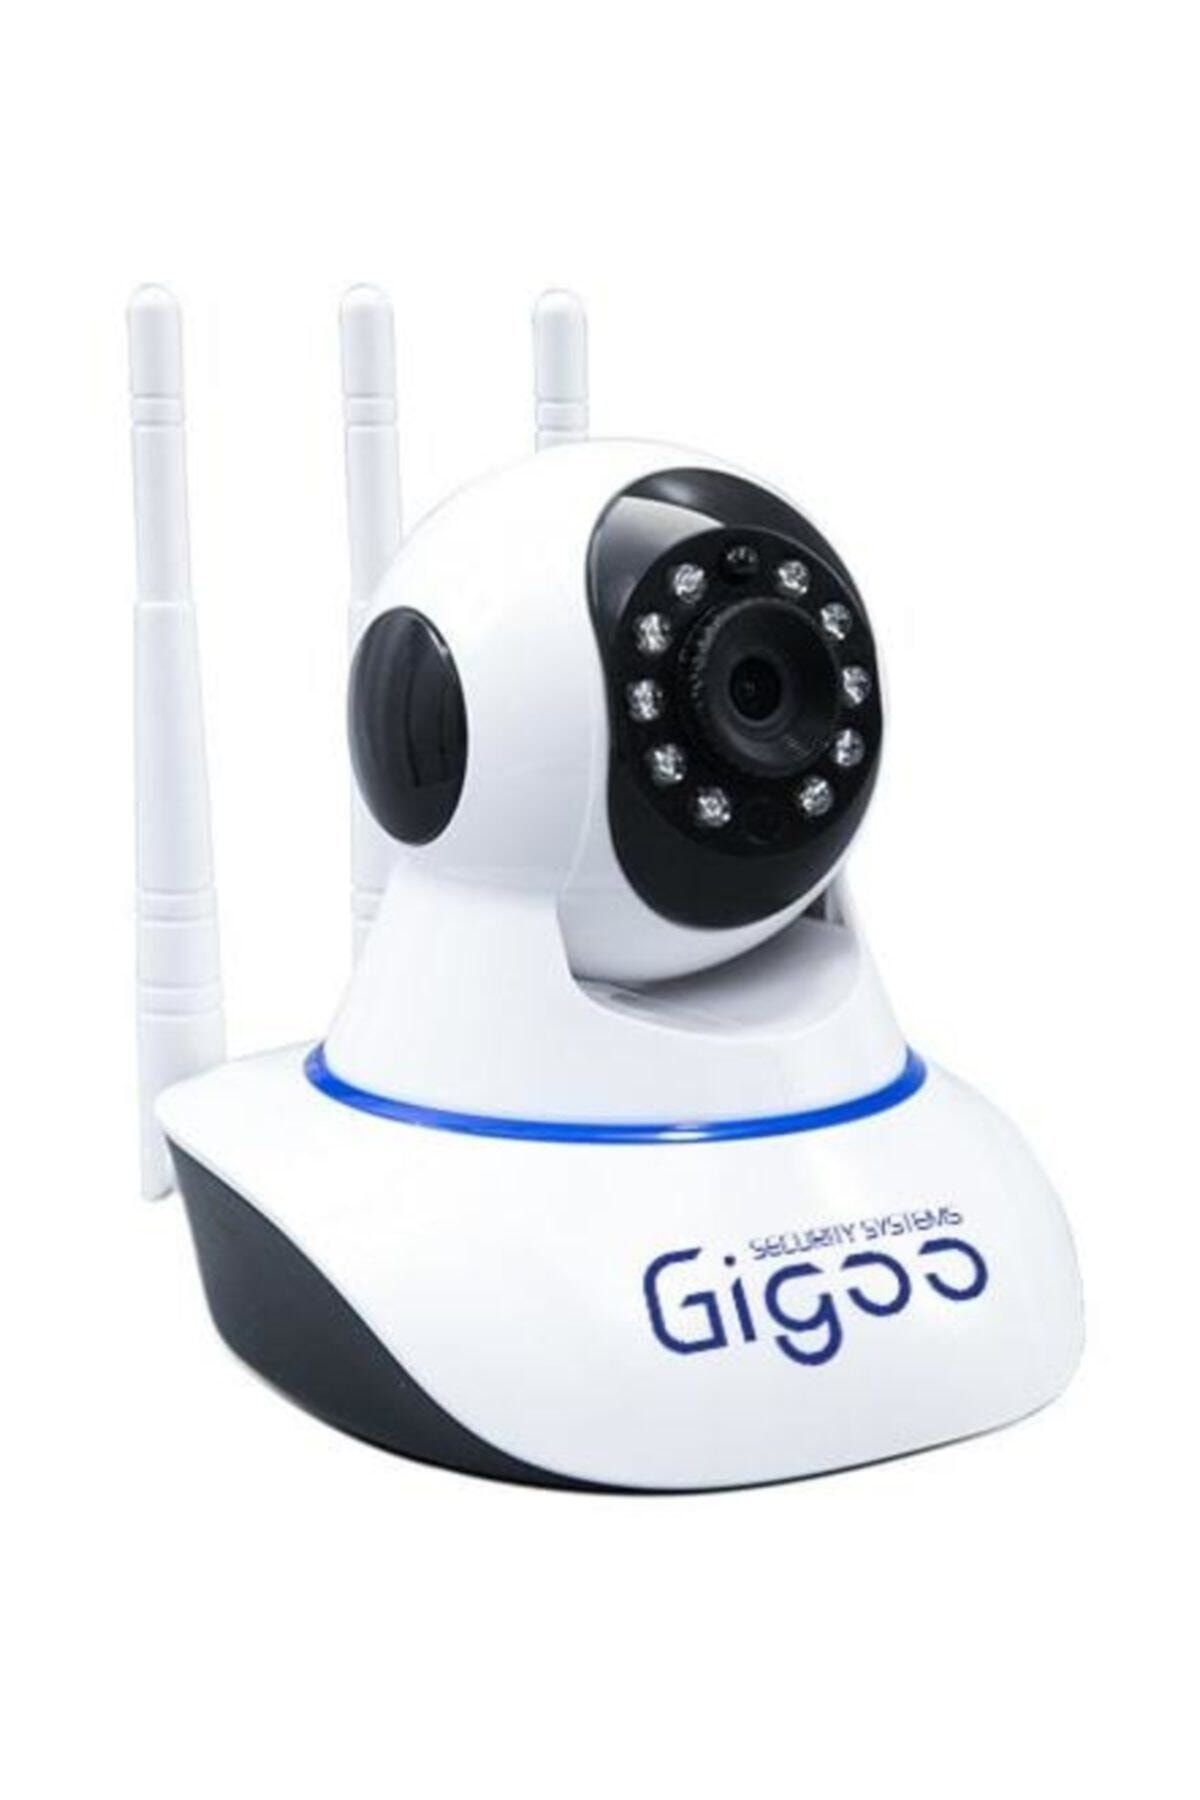 GİGO BABY Gigoo Hd 360° 3 Antenli Hareket Sensörlü Ip Bebek Ve Güvenlik Kamerası